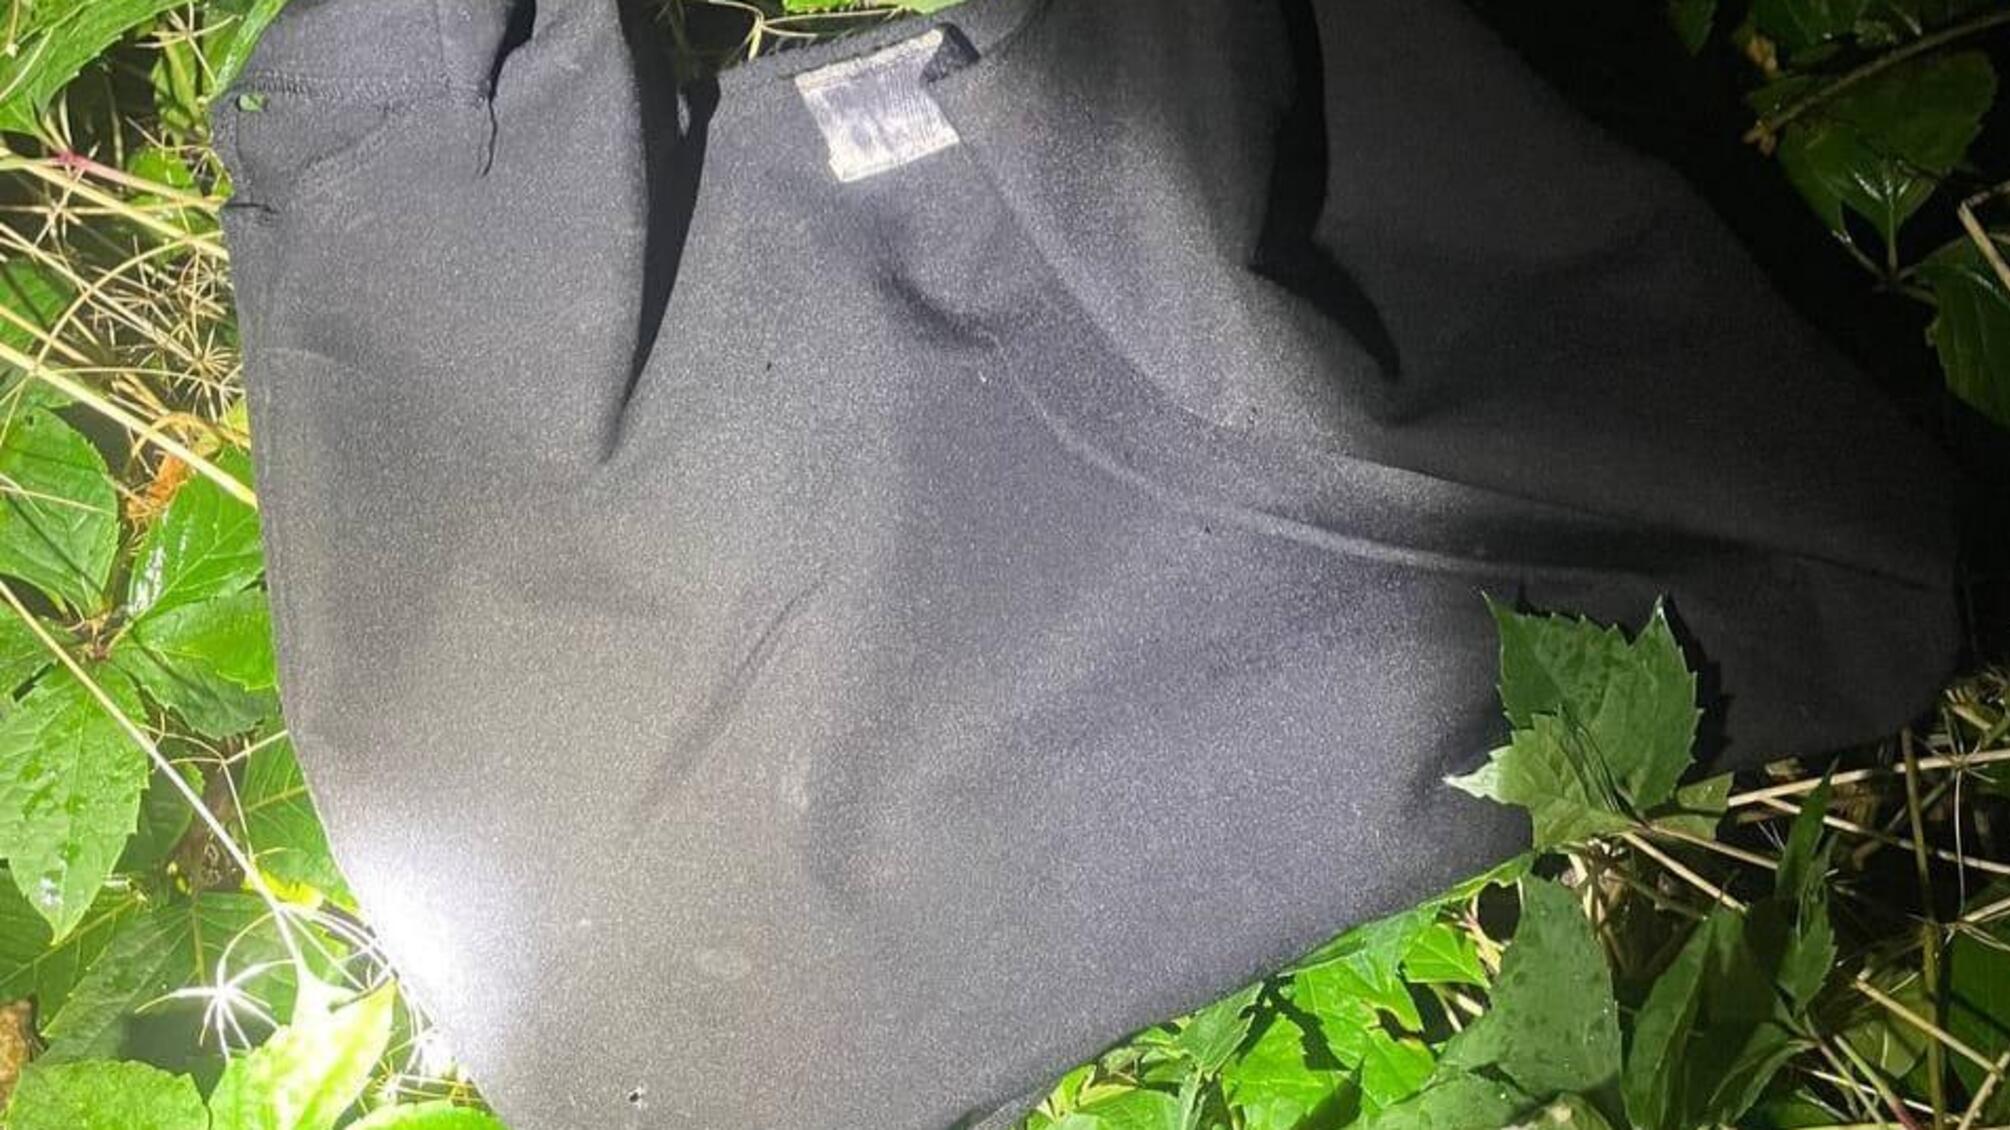 Поліцейські оперативно затримали двох молодиків, які в парку Шевченка пограбували молоду пару одеситів